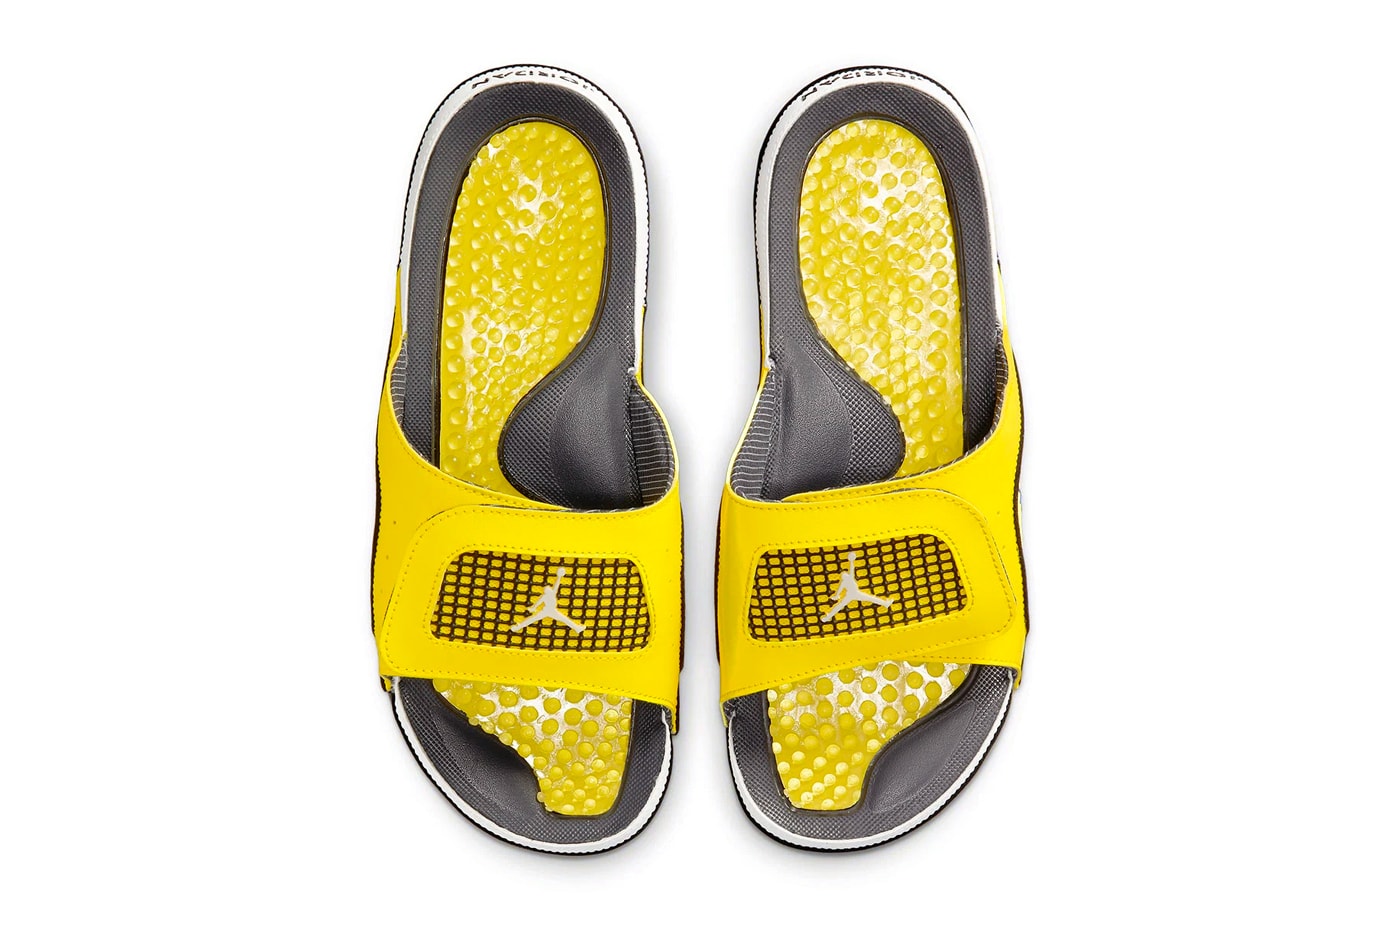 Original JORDAN HYDRO Nike Air Jordan Sandales Chaussures sport